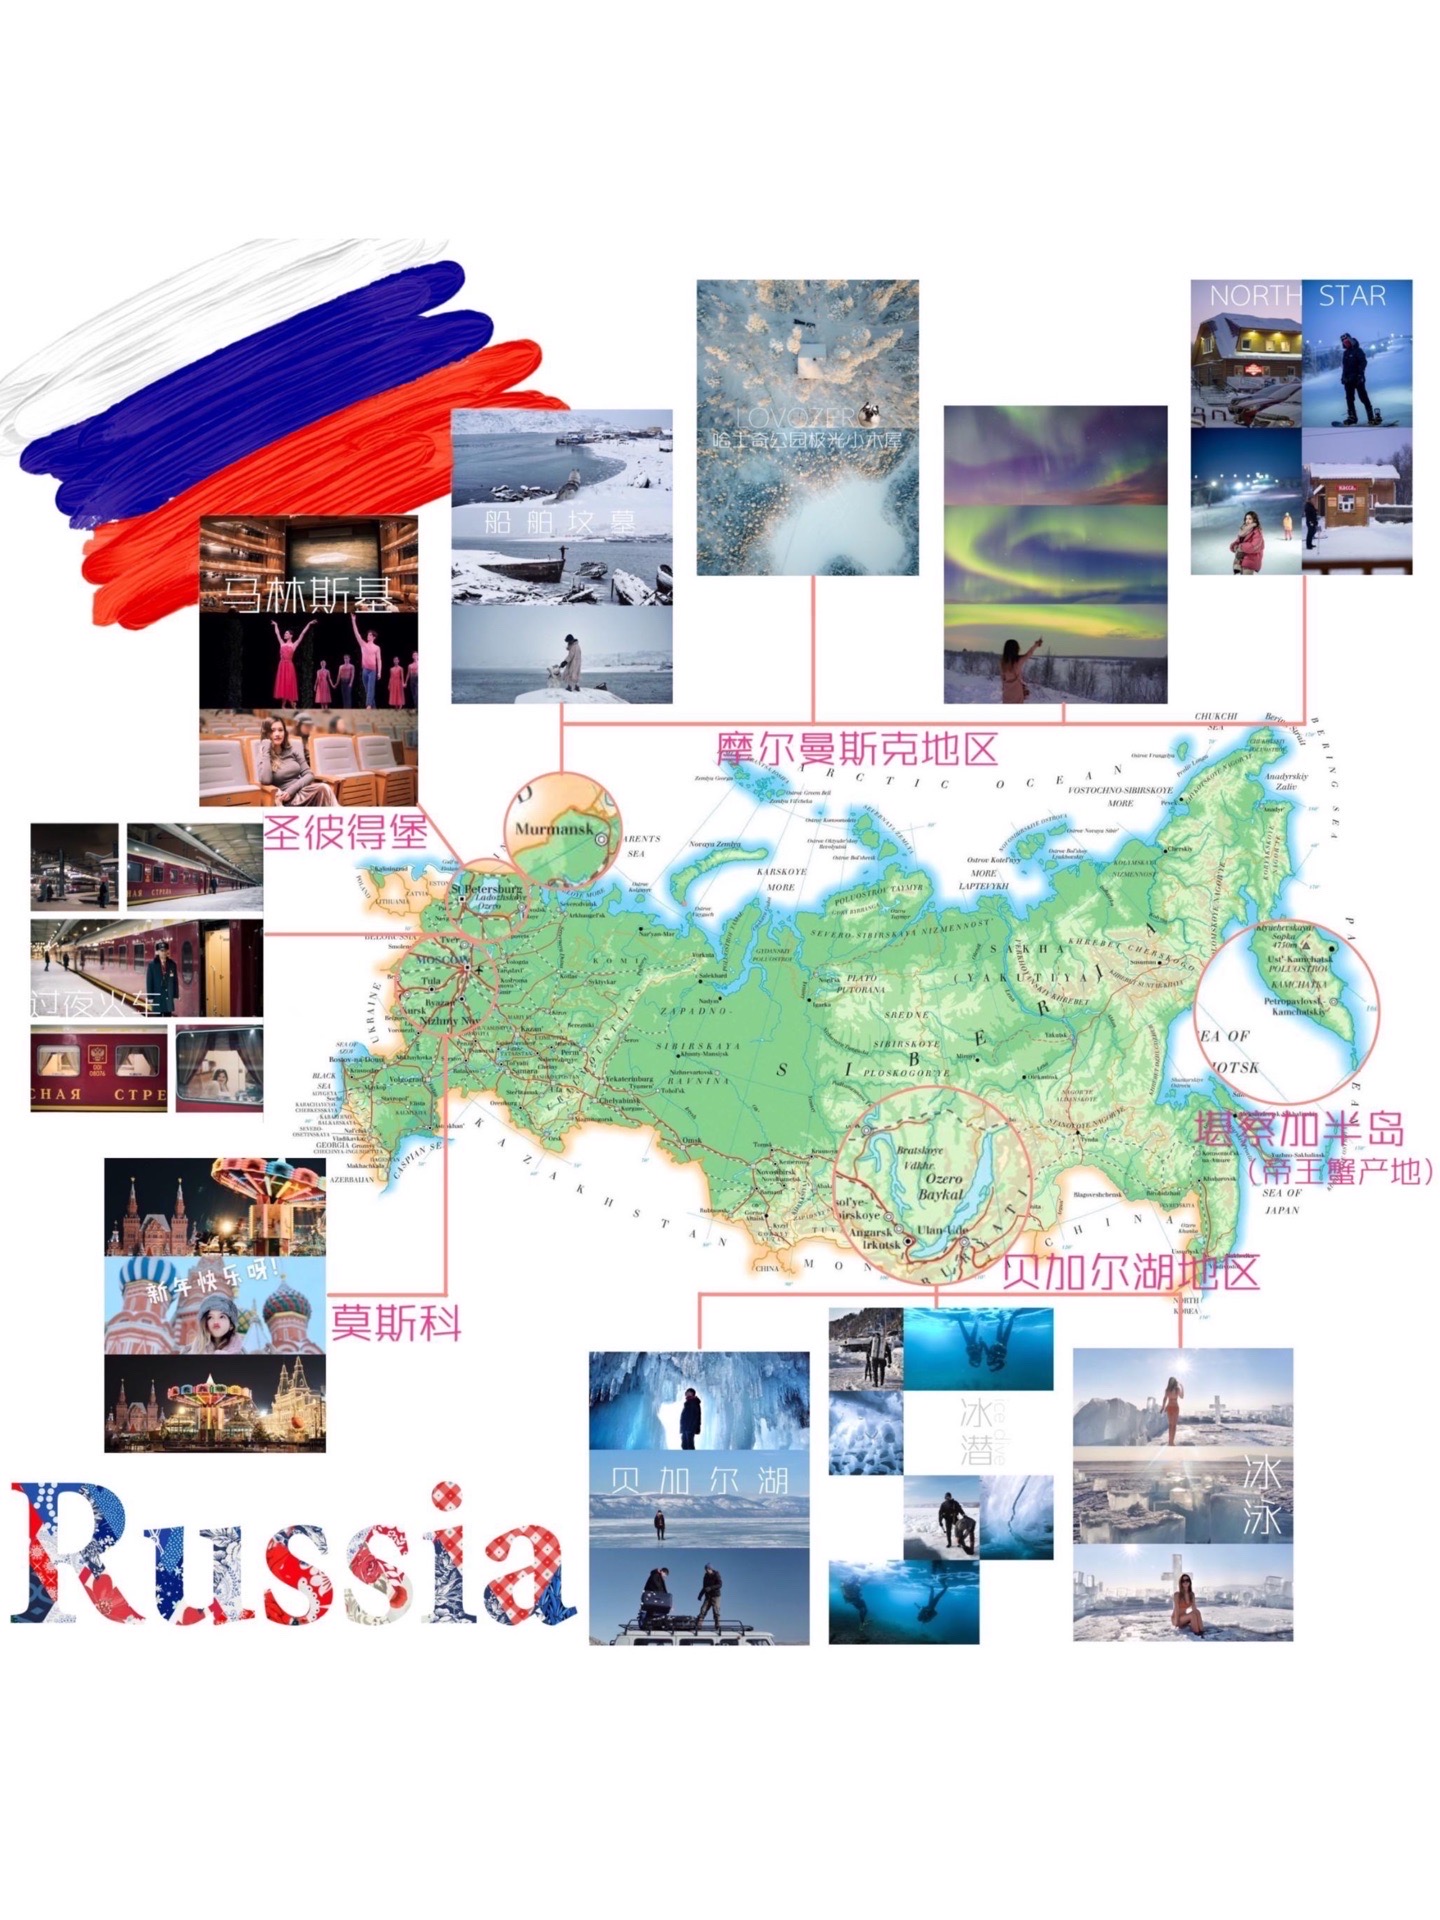 玩转俄罗斯必体验地图🌍 NO.1⃣️ 俄罗斯终极体验！——冰泳+俄式桑拿🔥  📍地点：利斯特维扬卡 